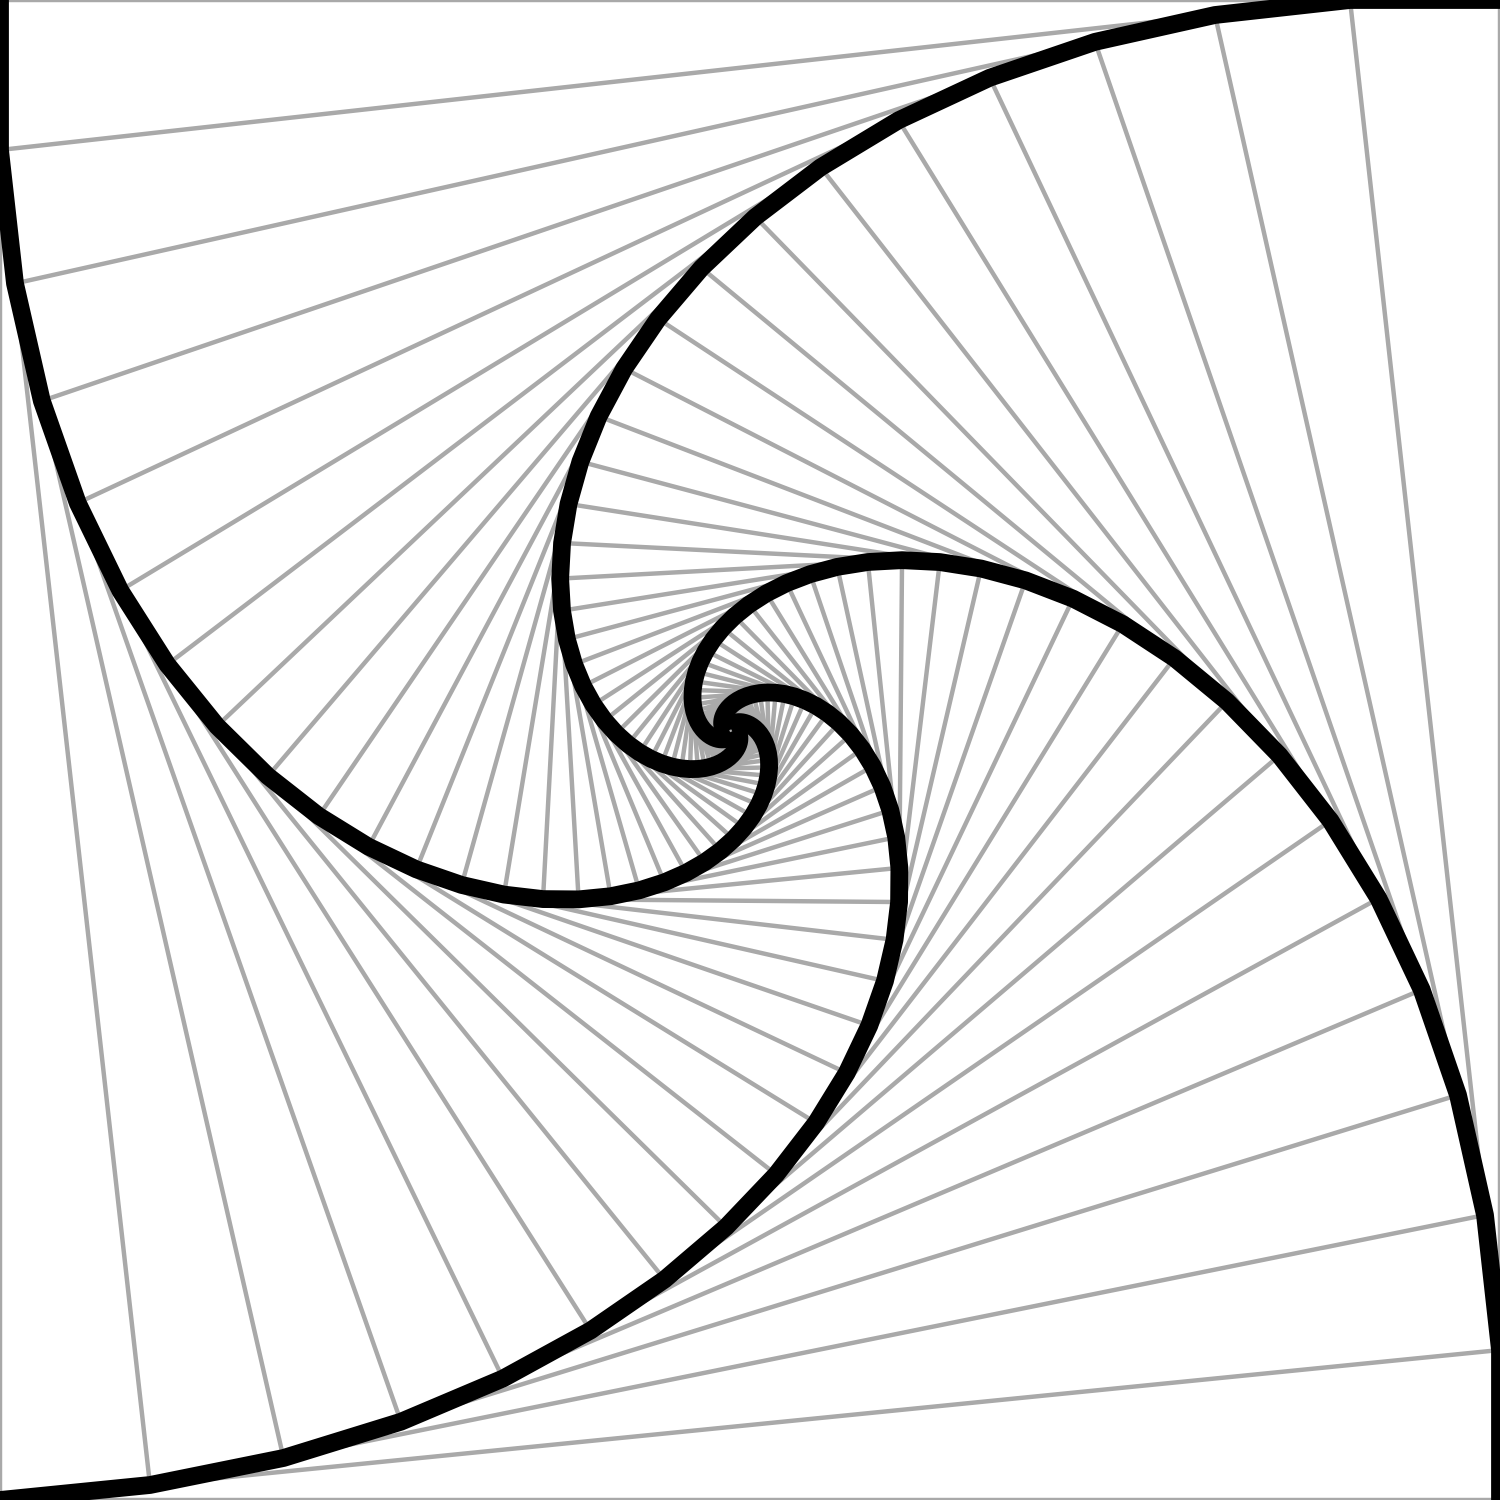 A left-handed spiral.